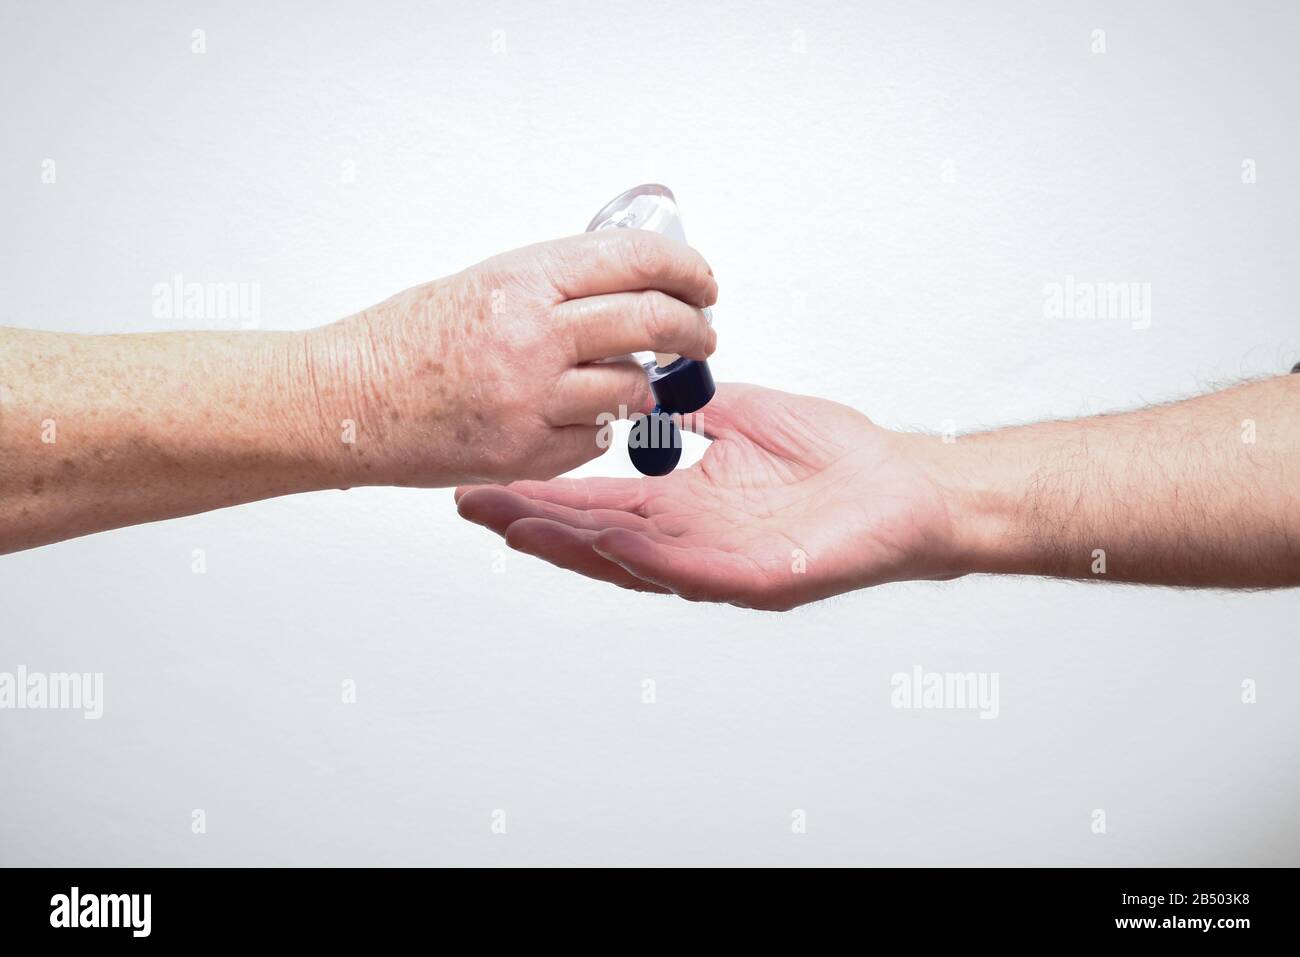 Les personnes qui utilisent et partagent du gel désinfectant pour les mains pour limiter la propagation du virus et de la maladie Banque D'Images